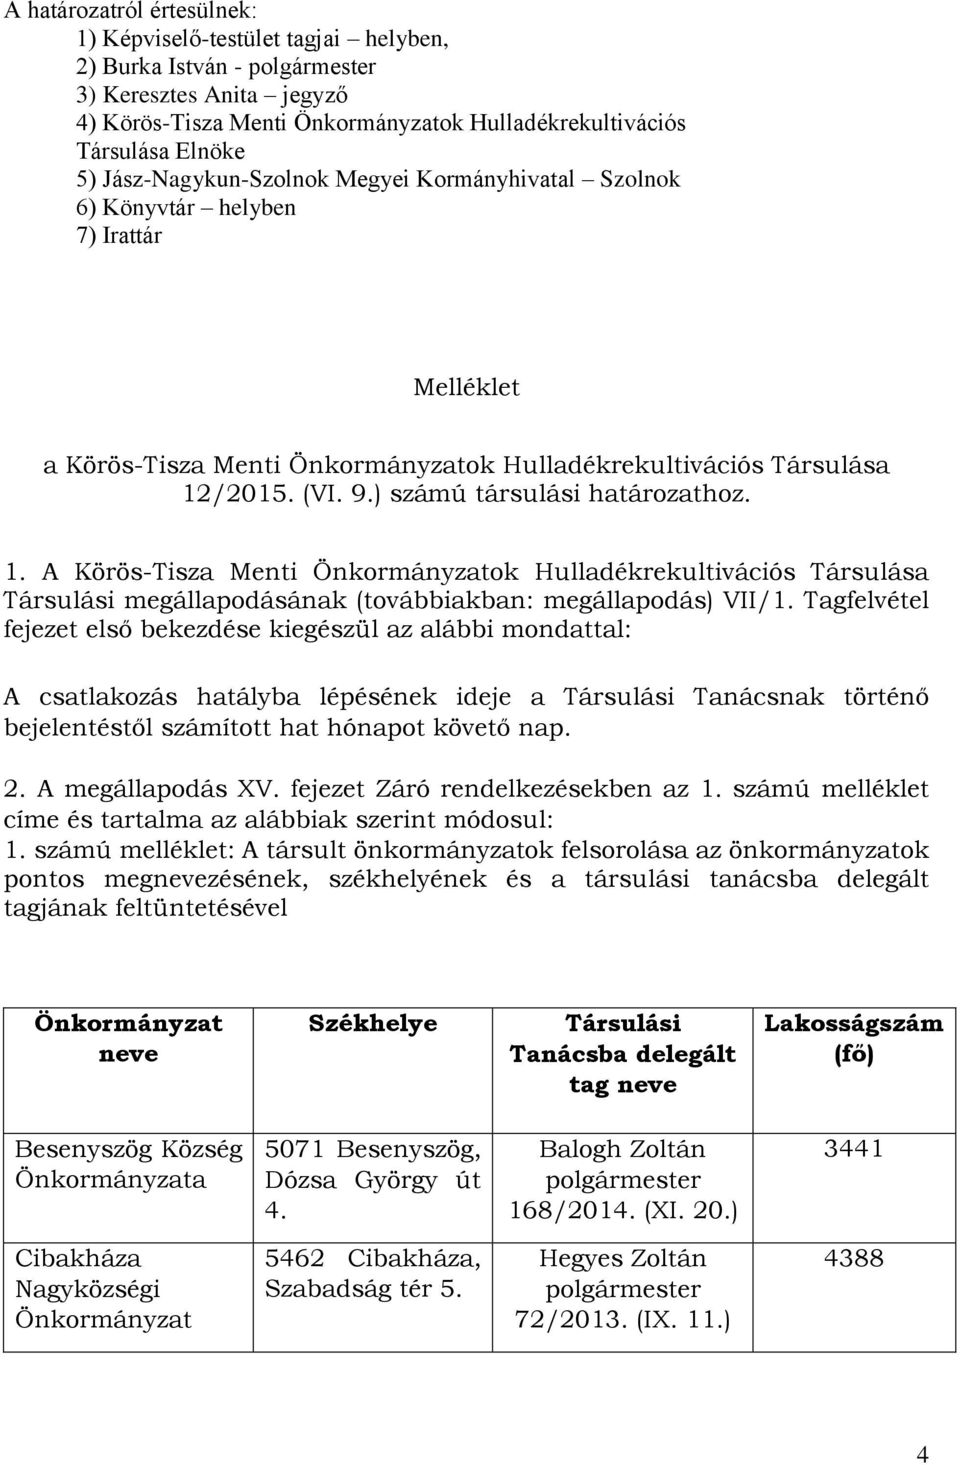 /2015. (VI. 9.) számú tásulási hatáozathoz. 1. A Köös-Tisza Menti ok Hulladékekultivációs Tásulása Tásulási megállapodásának (továbbiakban: megállapodás) VII/1.